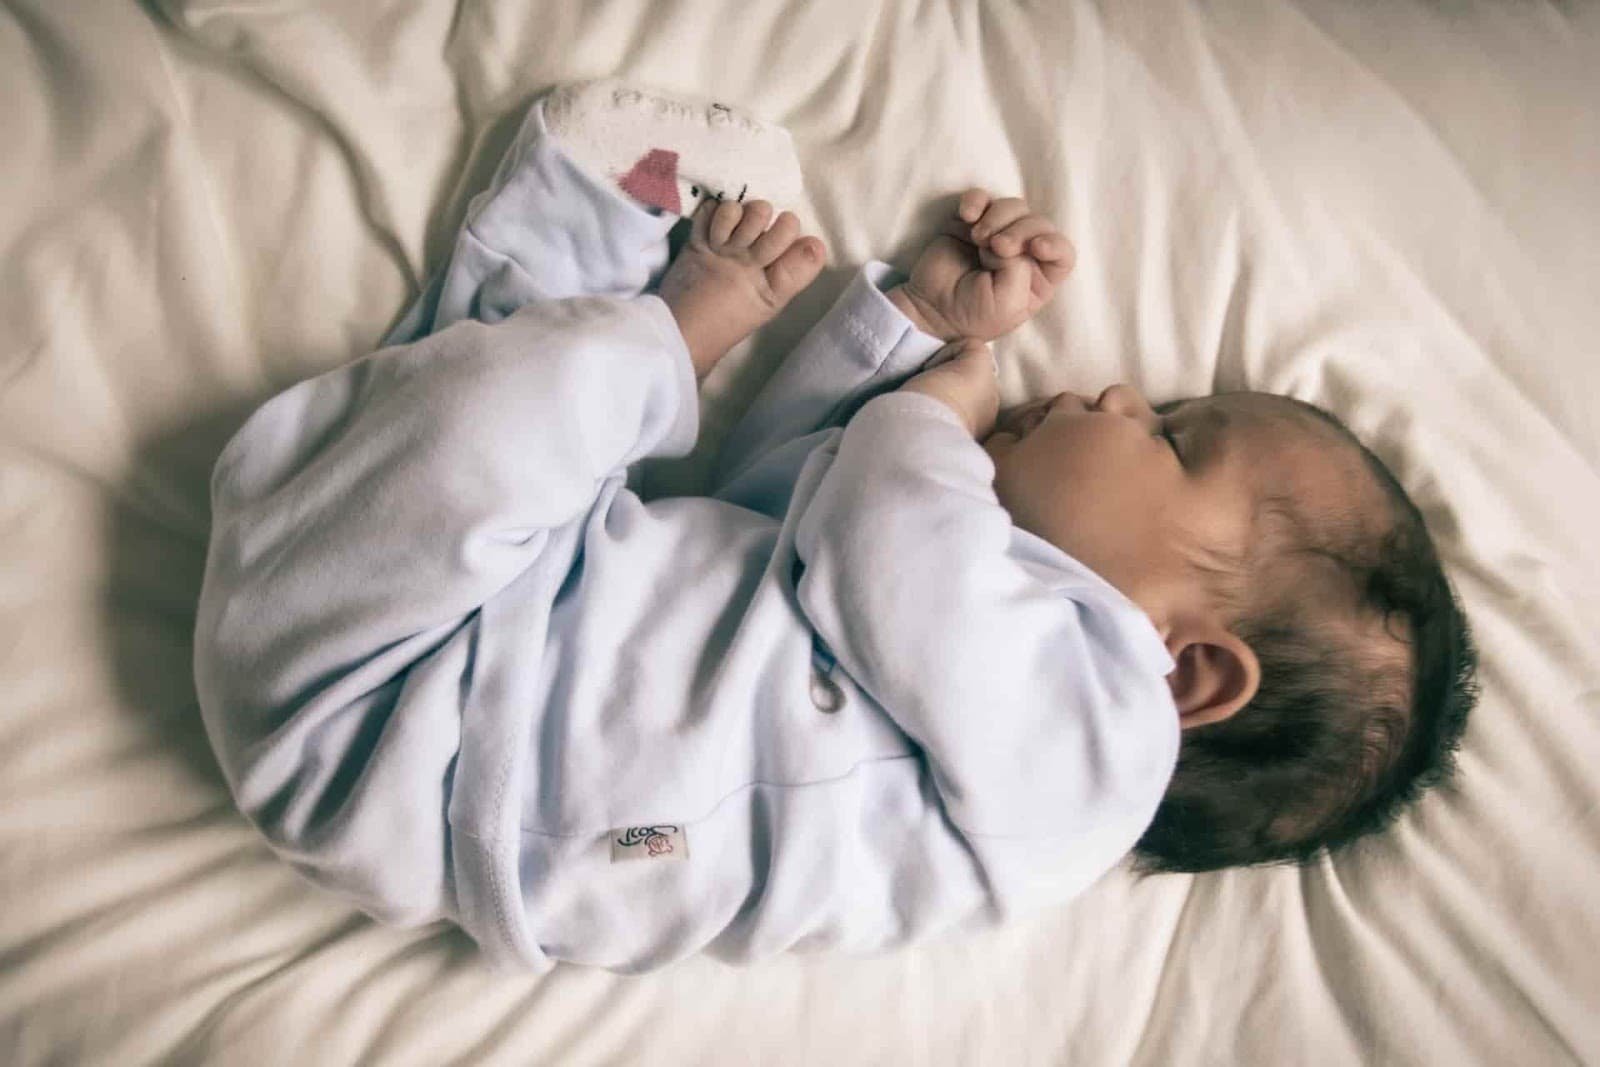 O ruído branco de um secador de cabelo ajuda o bebé a adormecer?